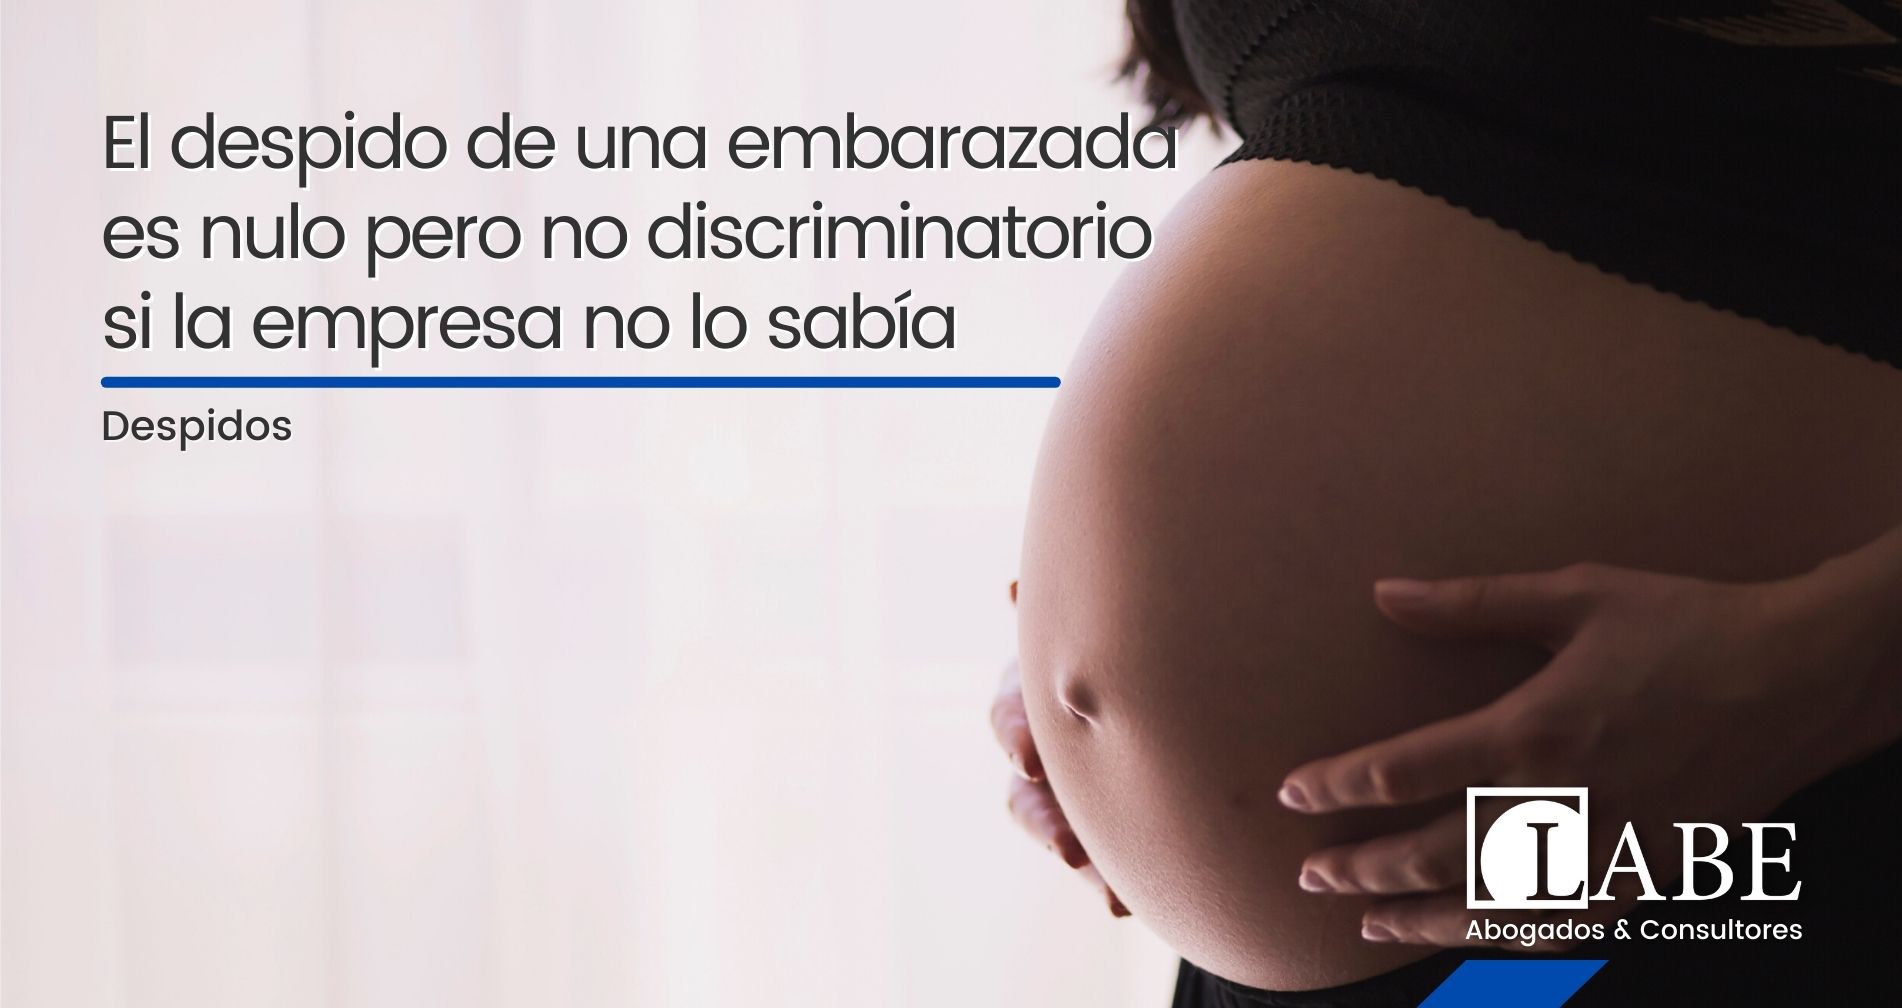 El despido de una embarazada es nulo pero no discriminatorio si la empresa no lo sabía